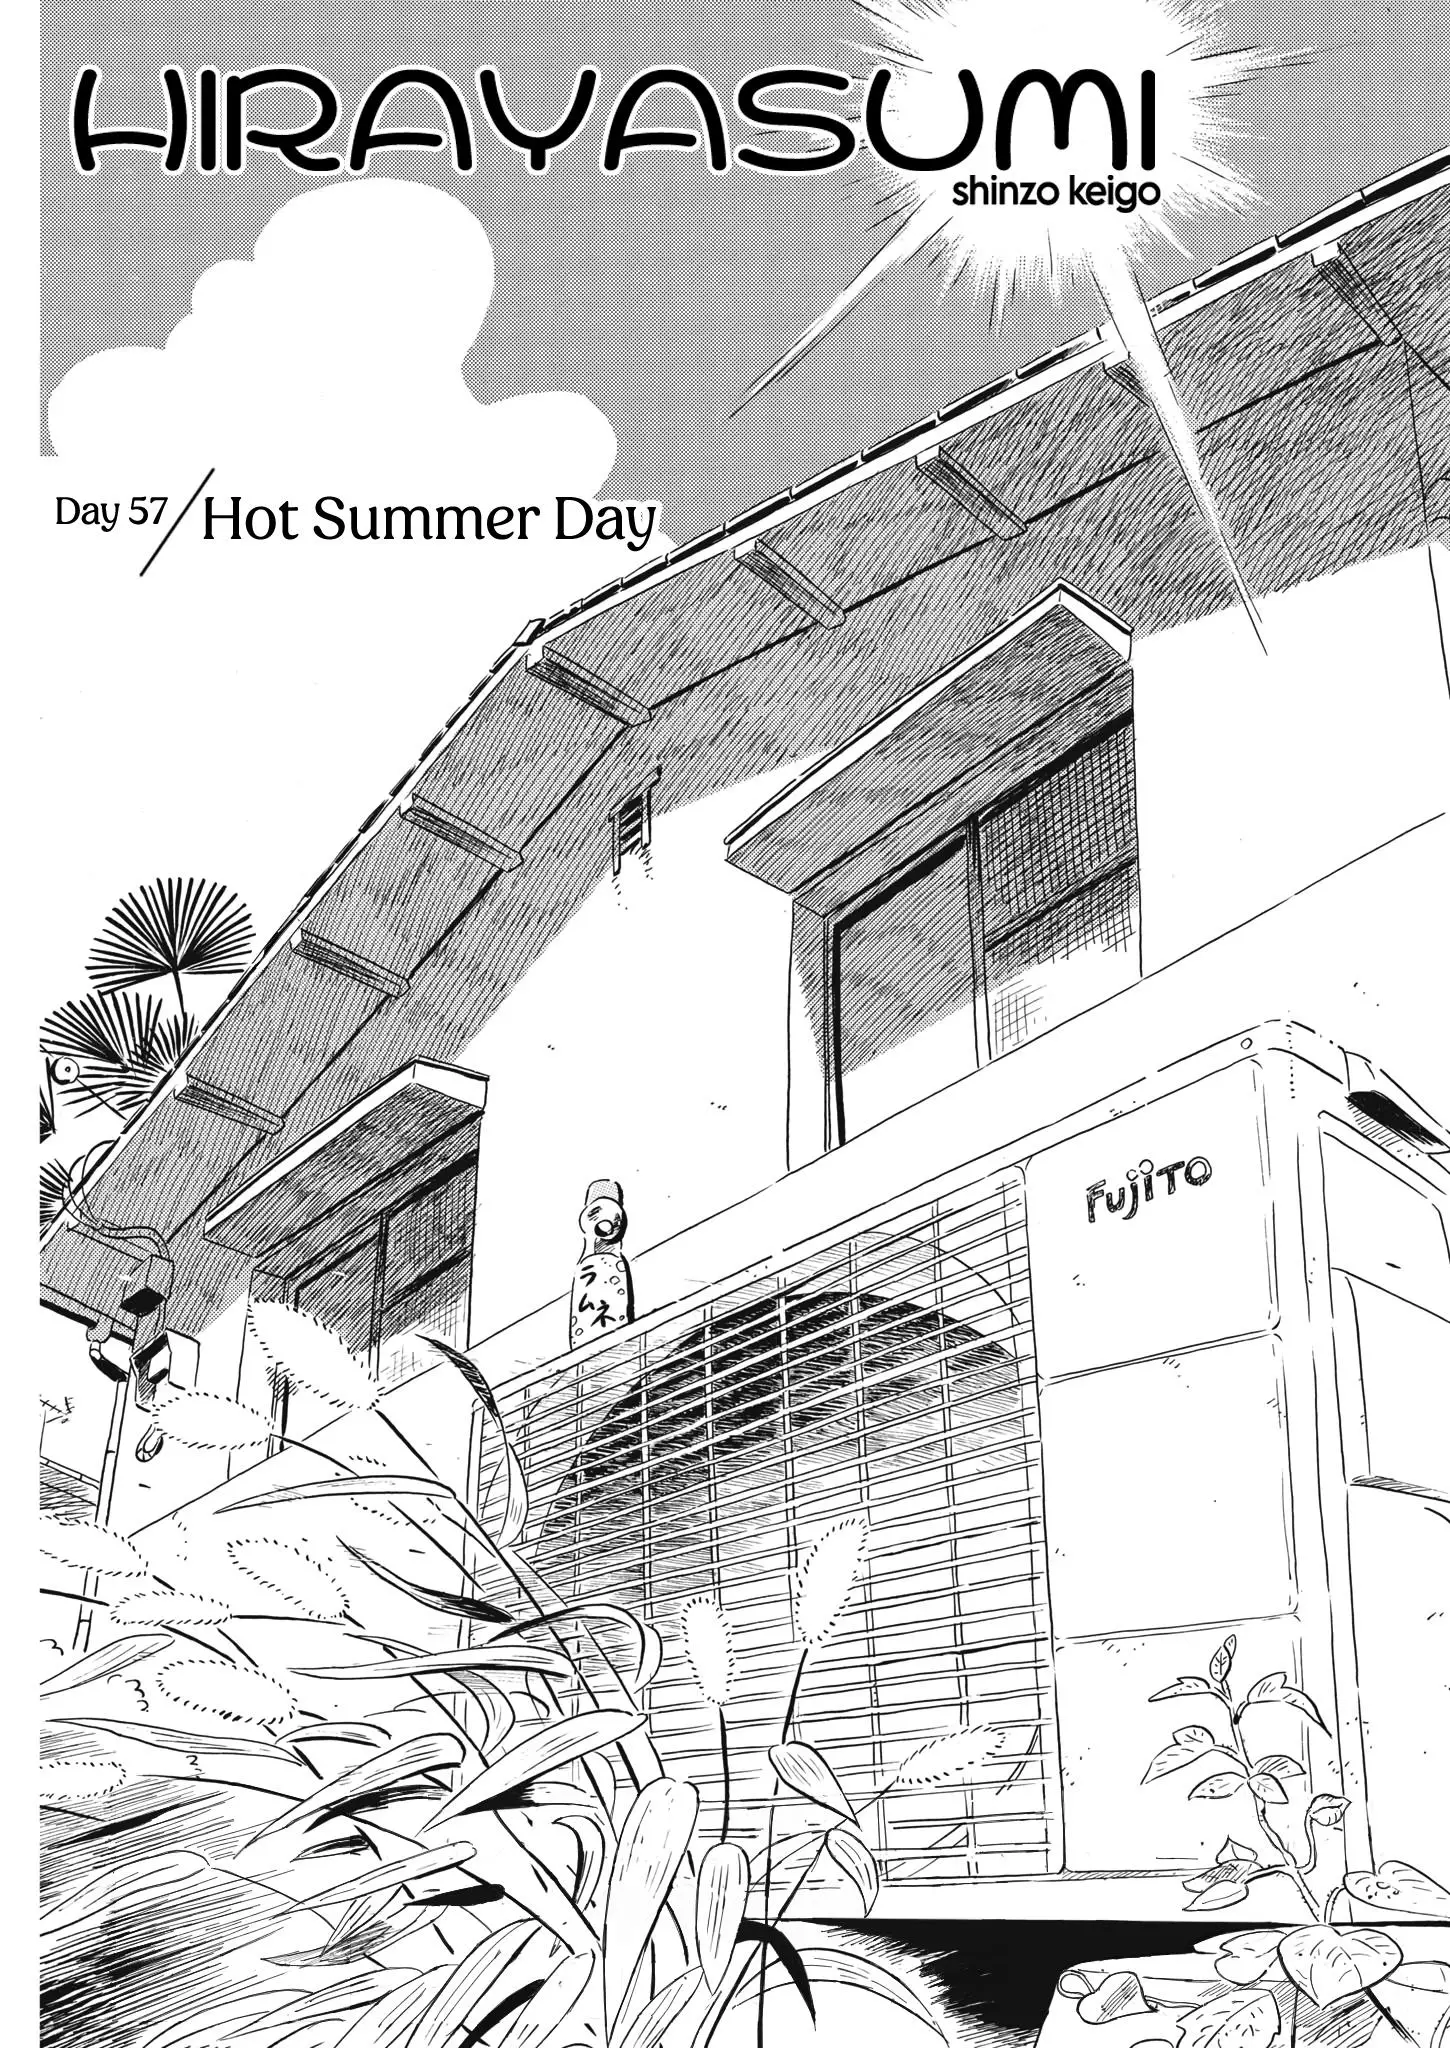 Hirayasumi - 57 page 1-642a65ea